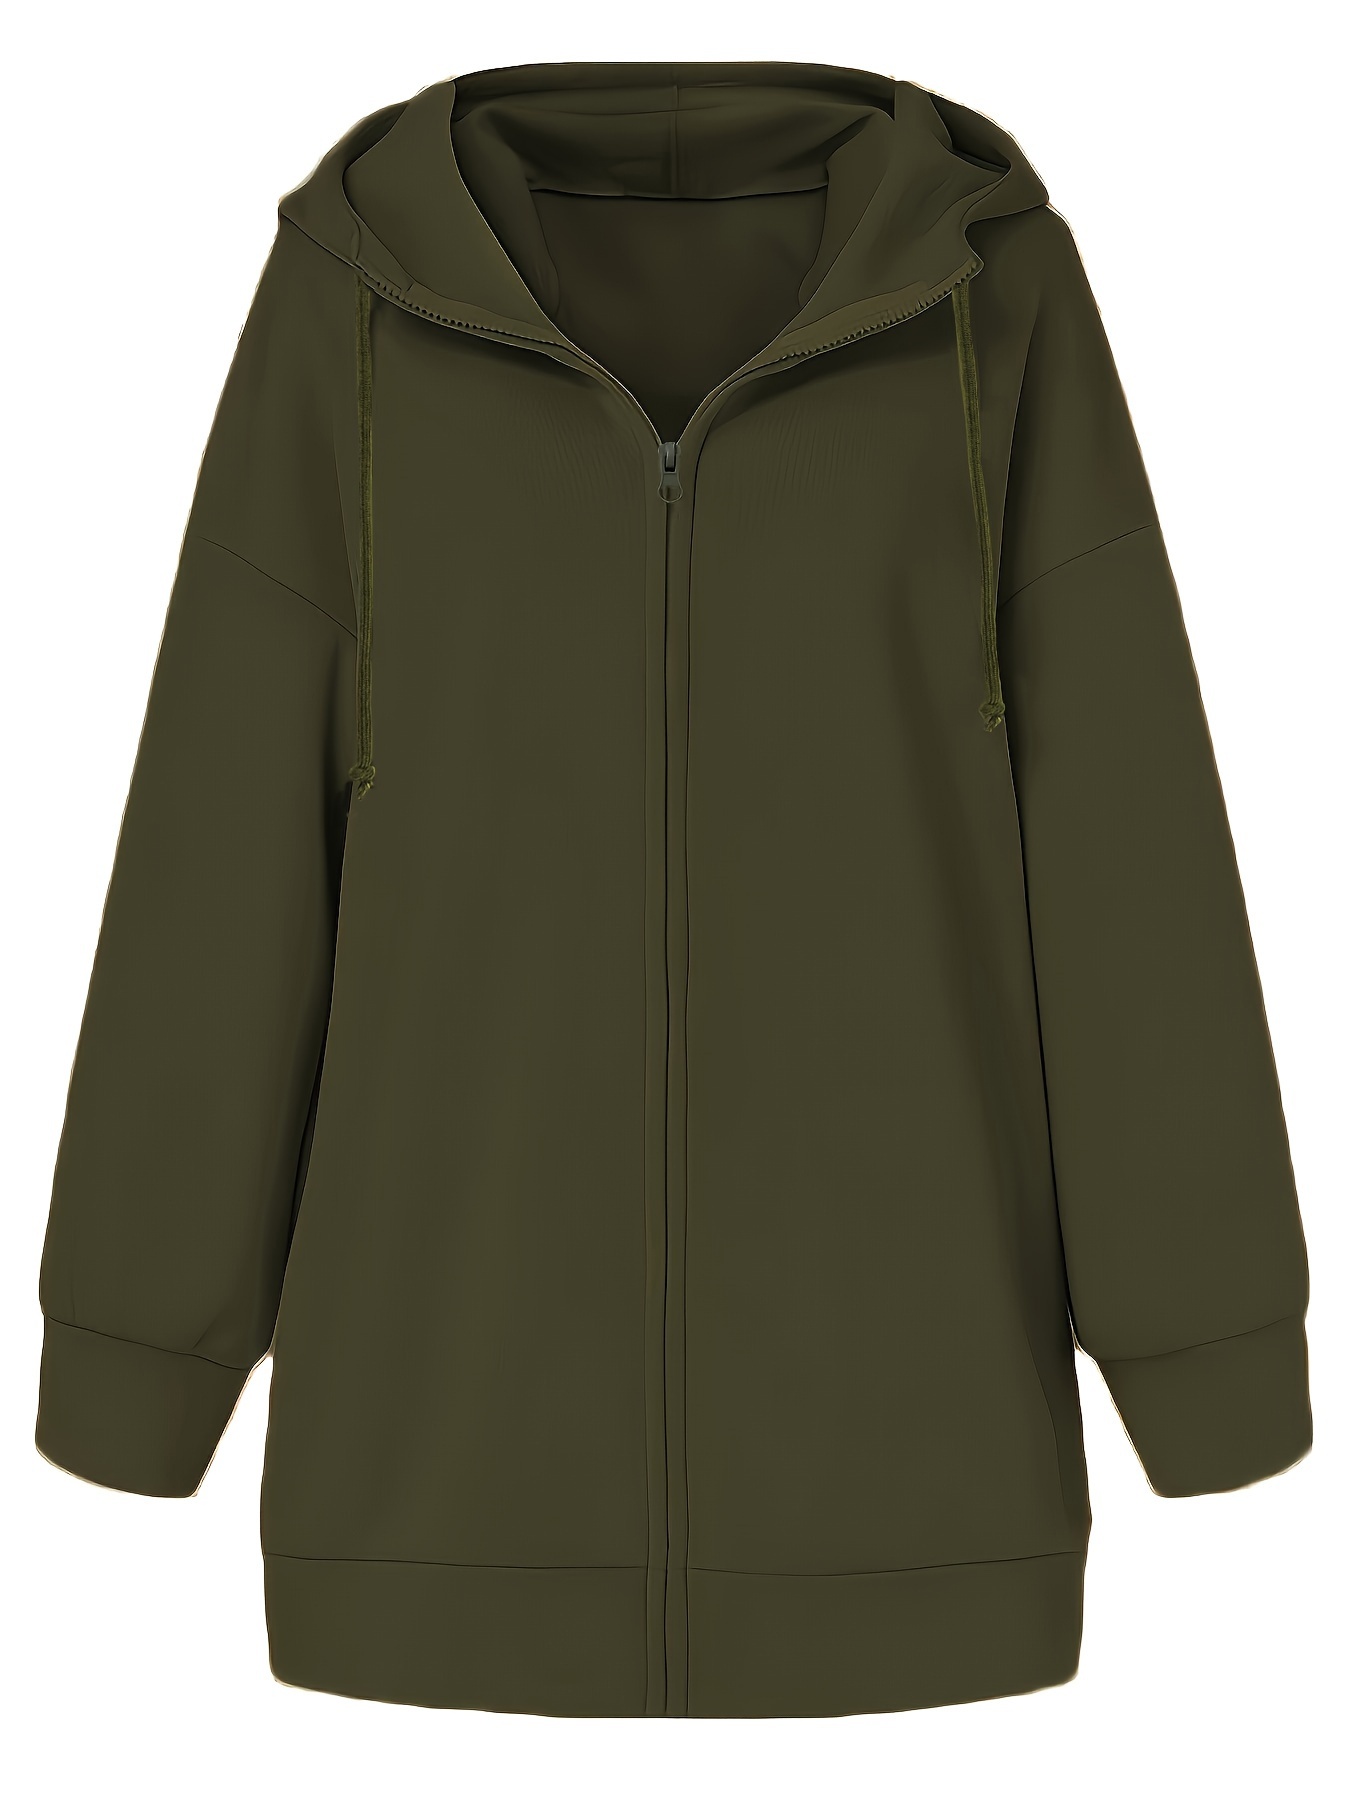 ZERDOCEAN Womens Plus Size Full Zip-Up Hoodie Jacket Cotton